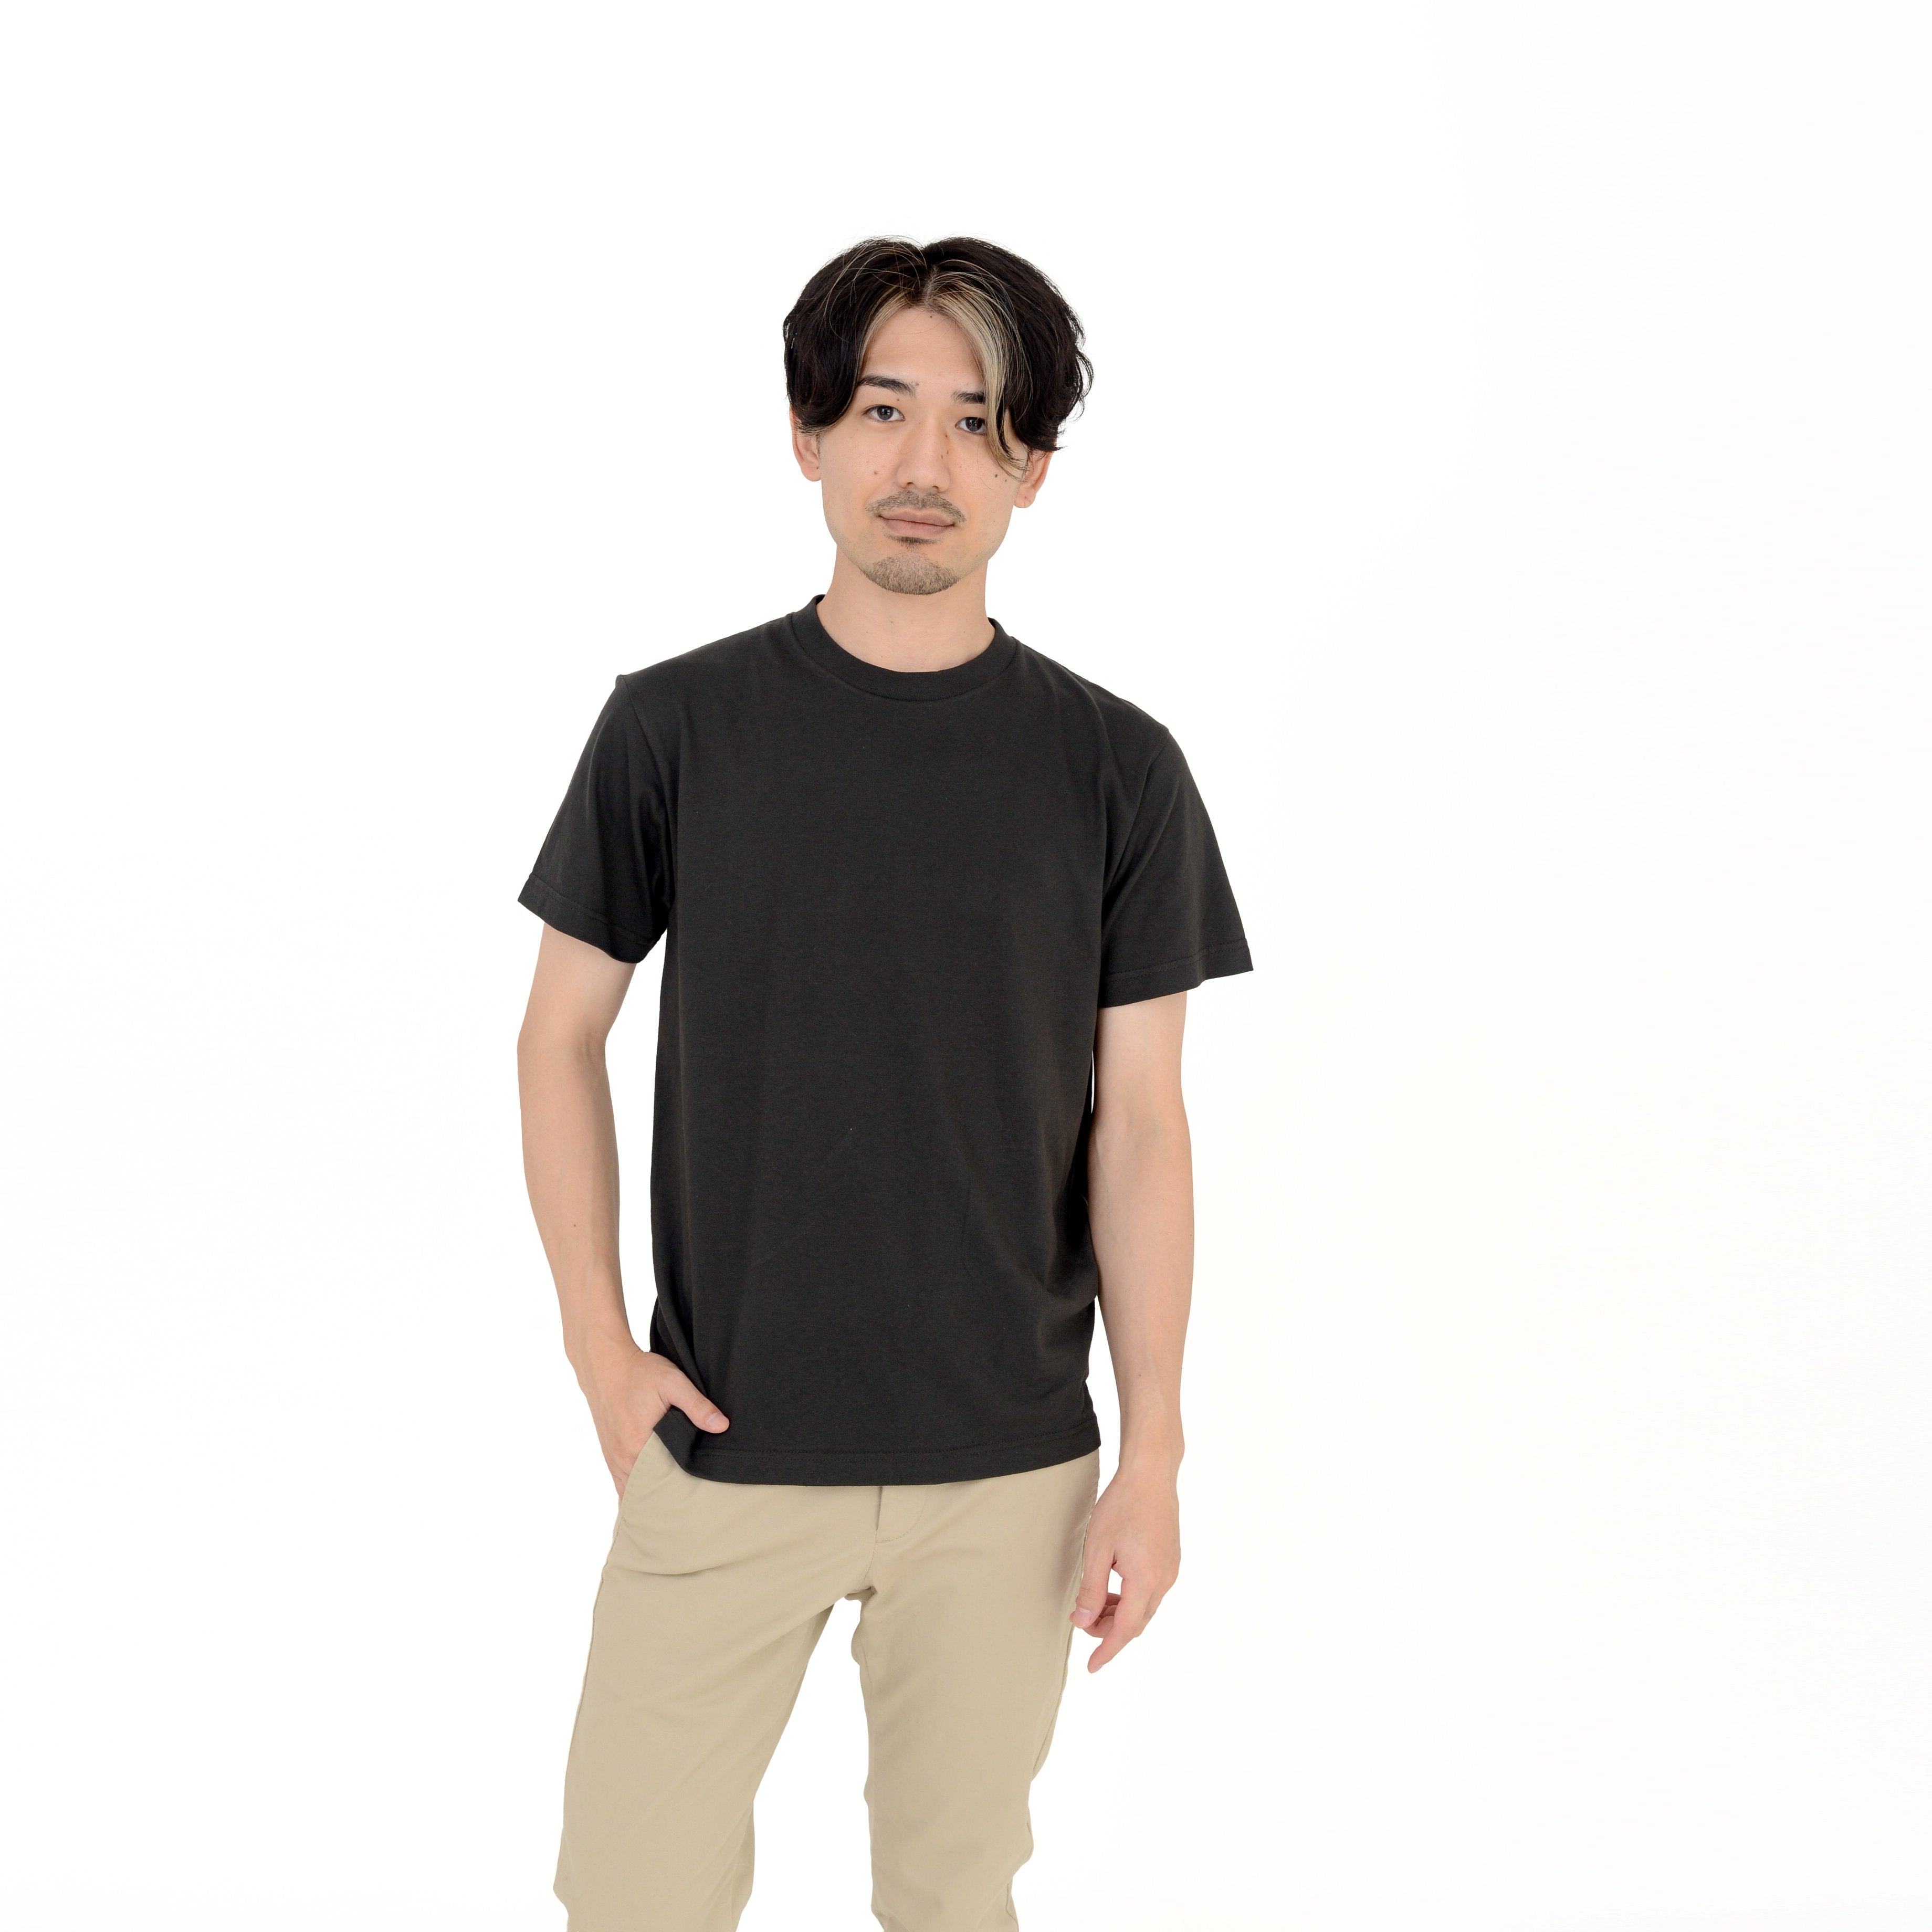 ニセックス Tシャツ シンプル メンズ ストzg5ea65 - ウェア